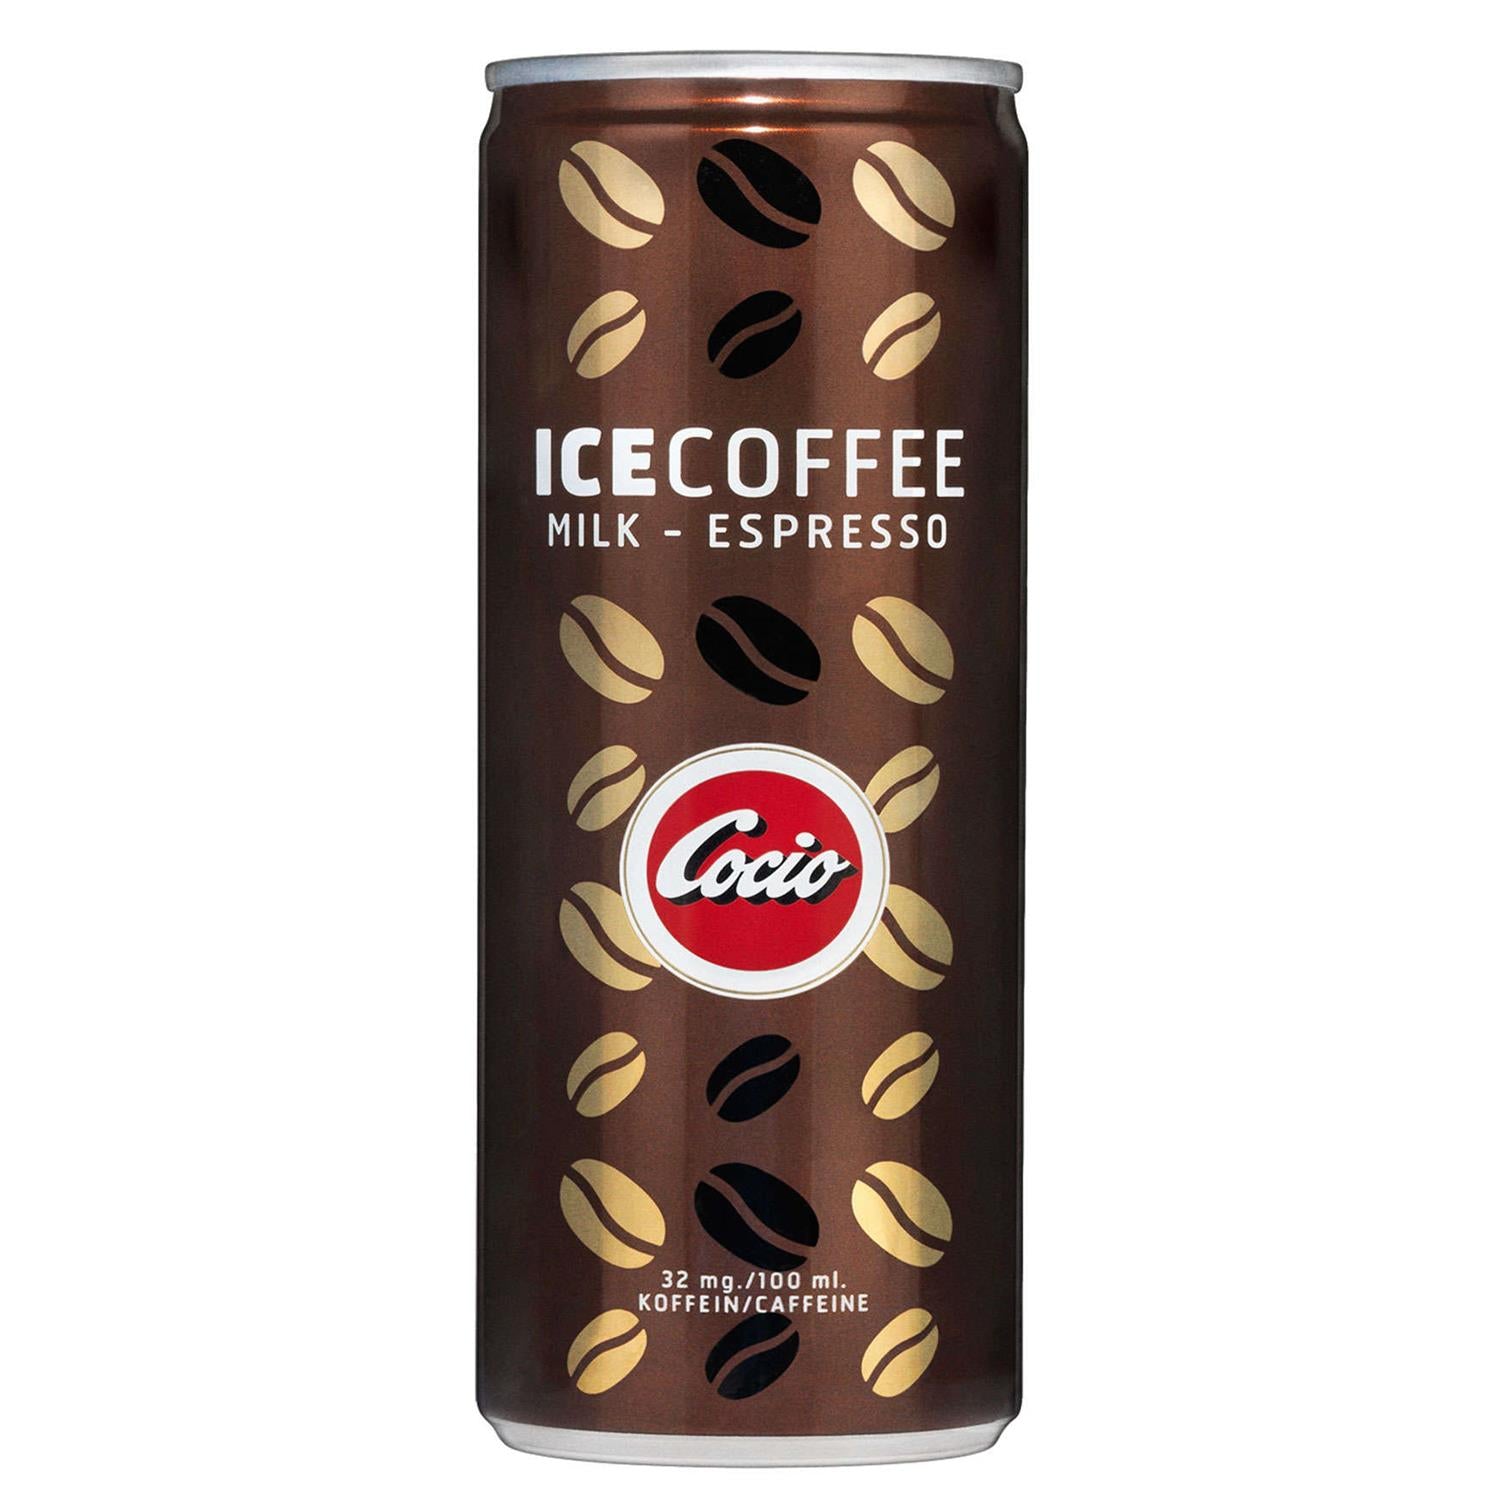 Cocio Iskaffe - Espresso